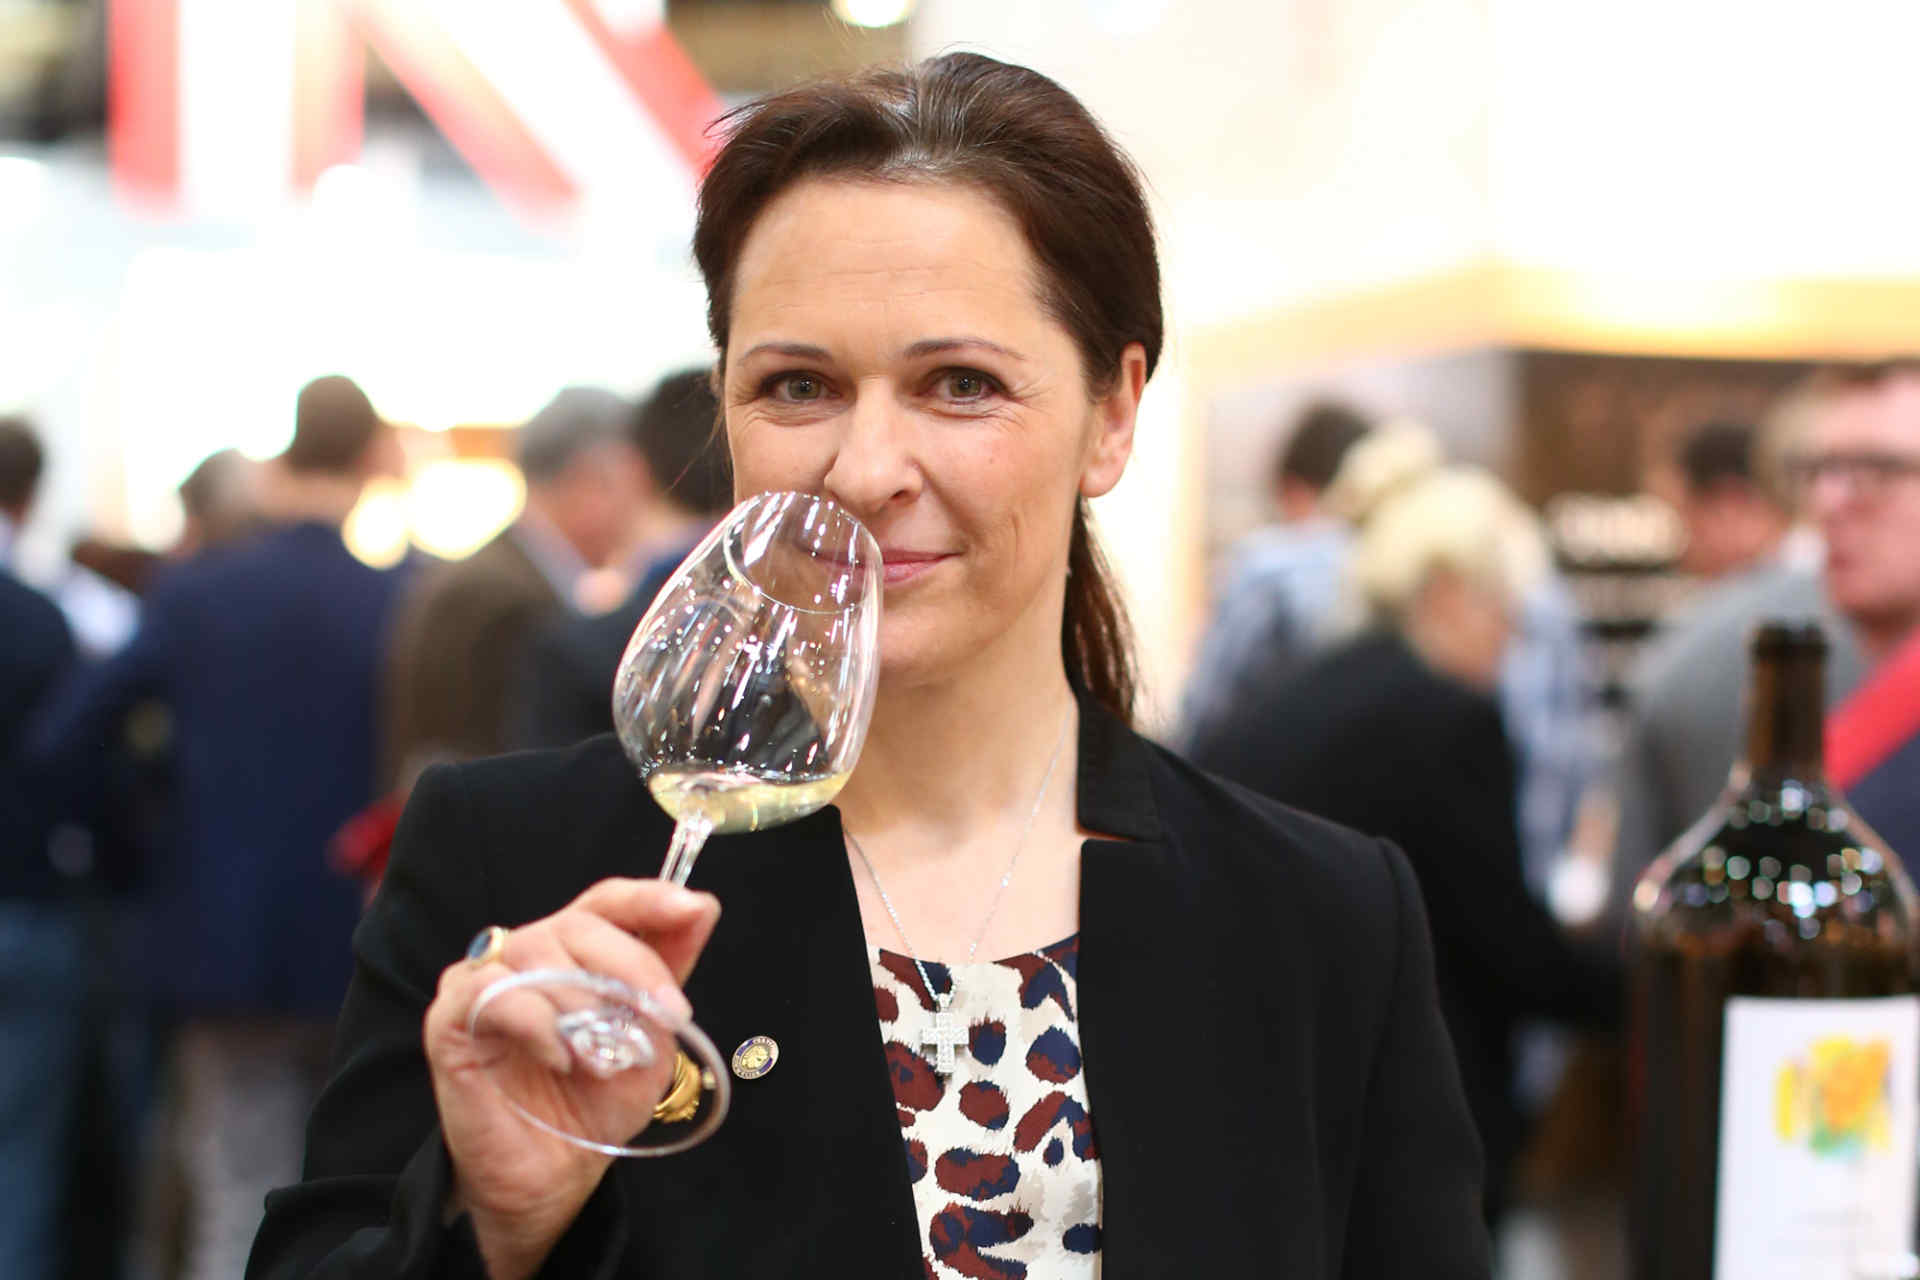 Schwäche: Seele des Weins. Diese kann die KI nämlich nicht erkennen, meint die Präsidentin der Sommelierunion Austria, Annemarie Foidl. © Mathis Wienand